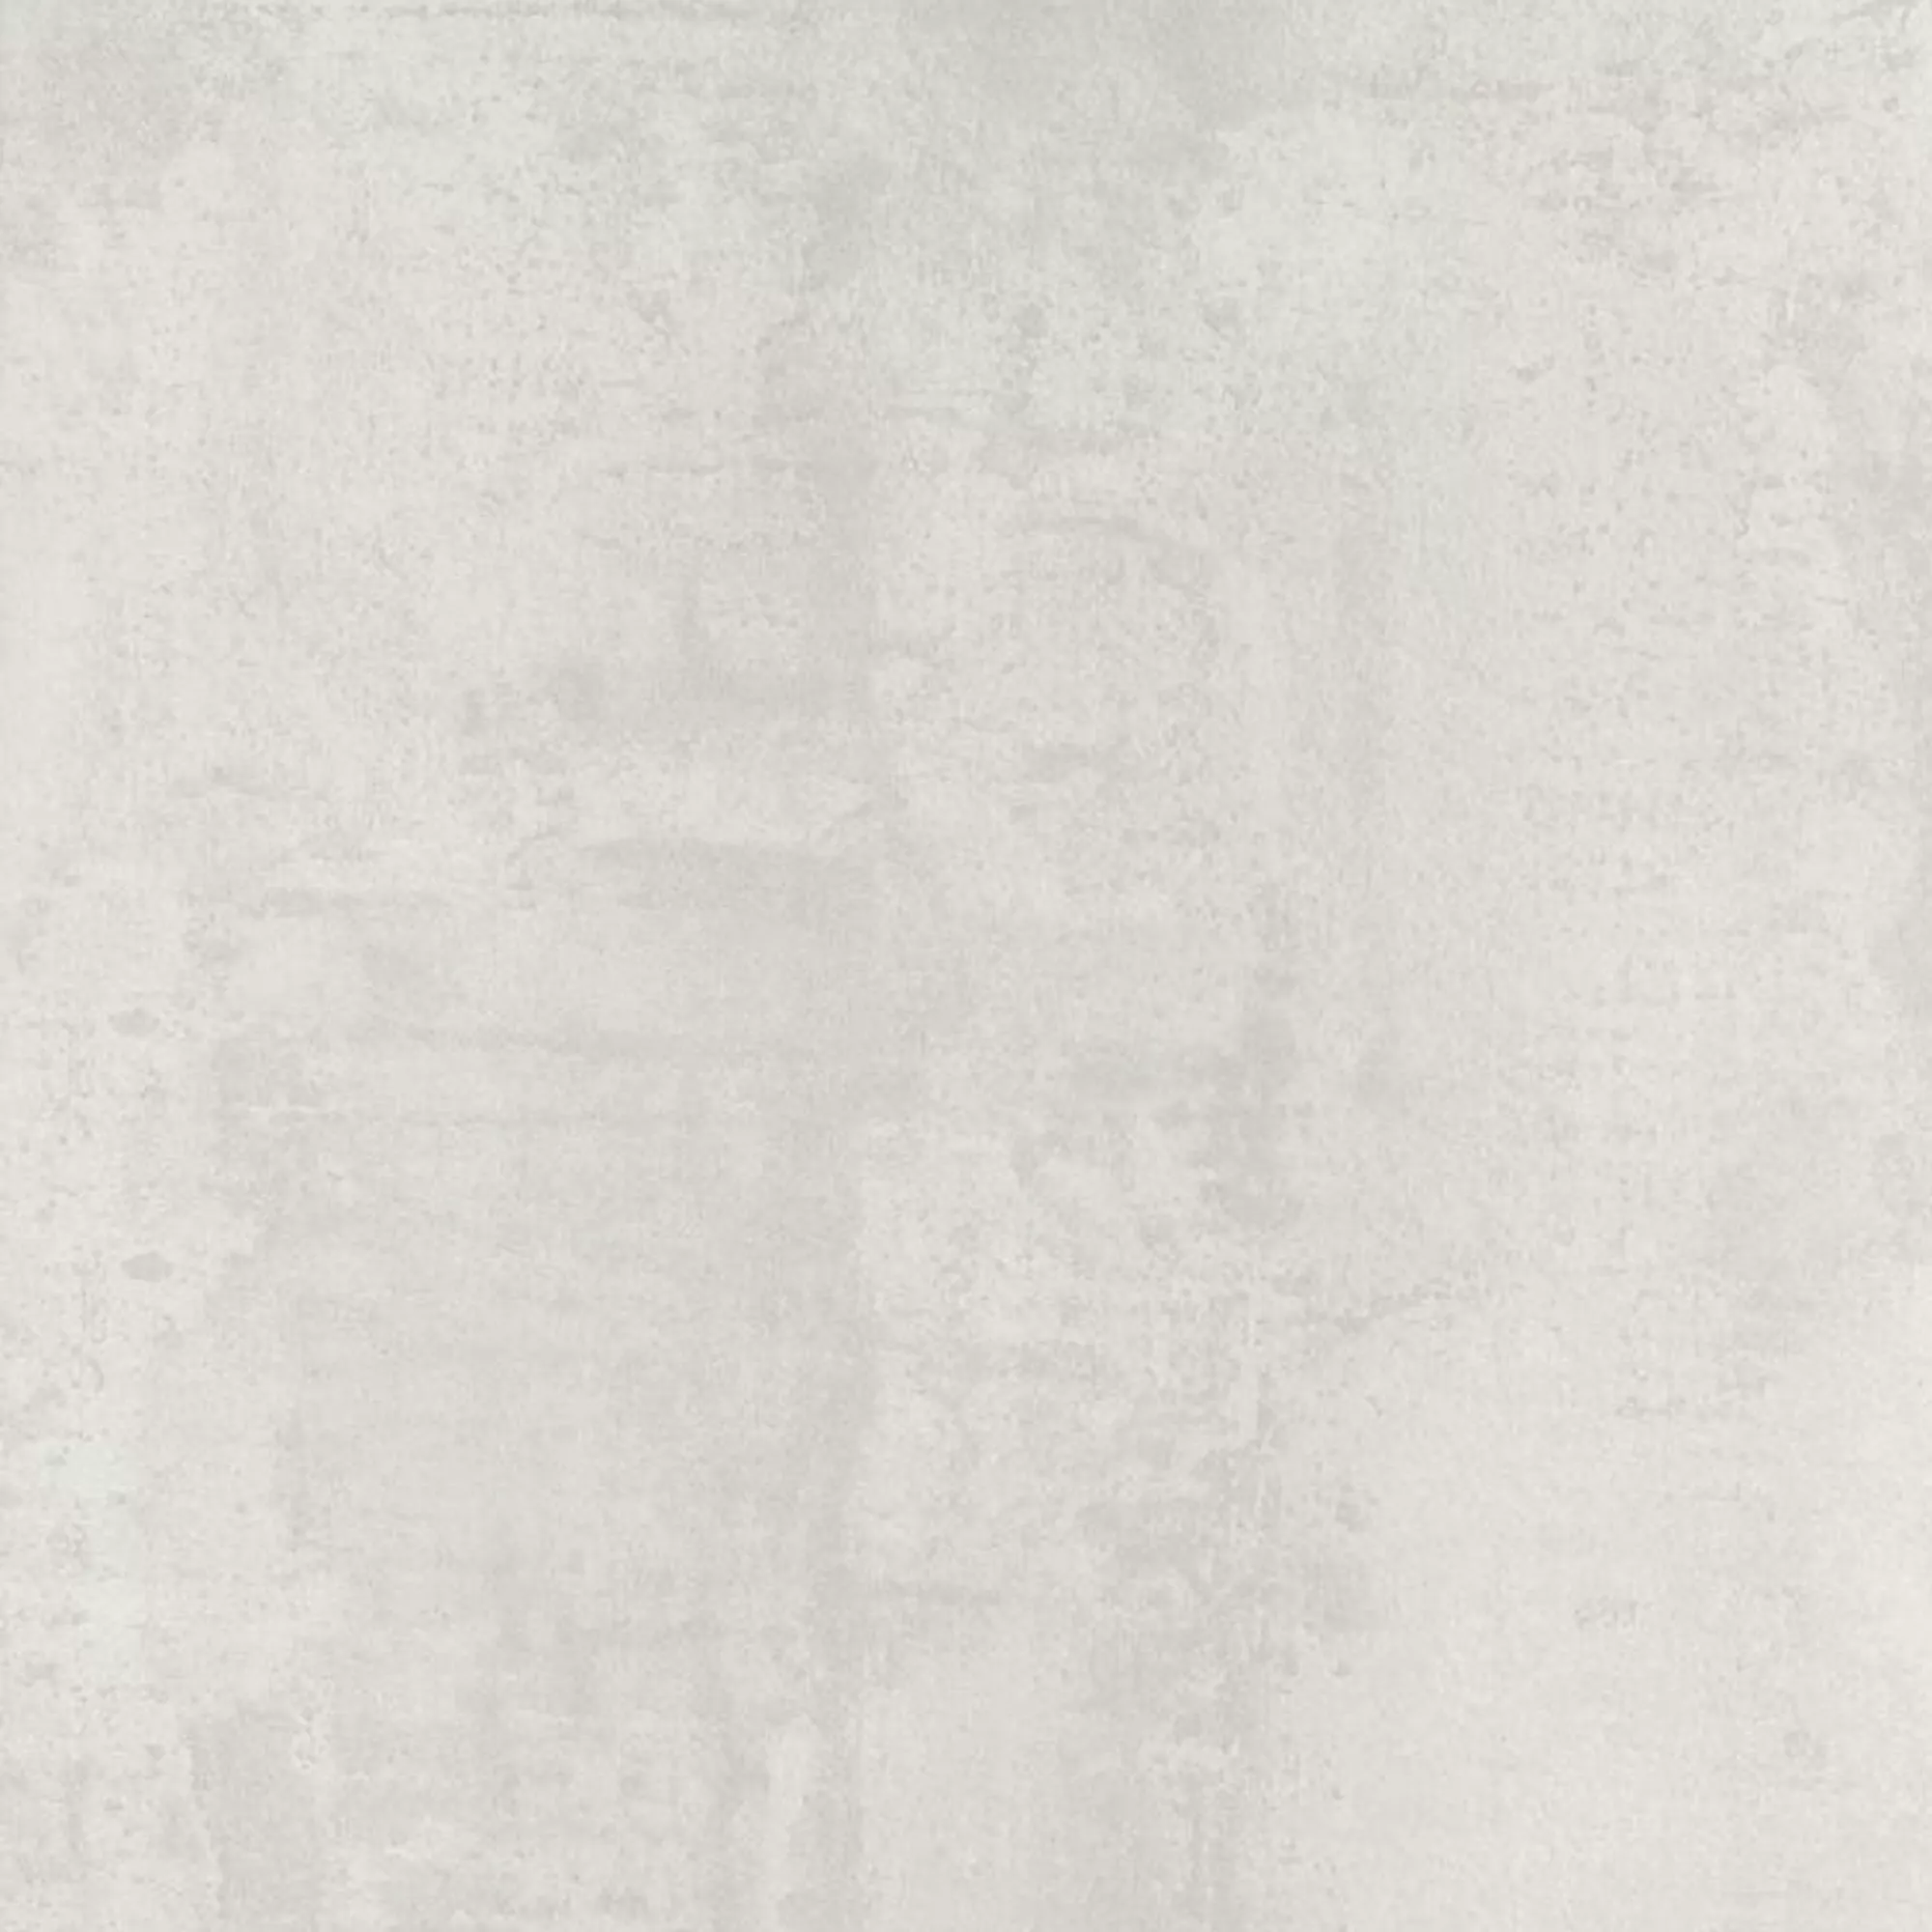 Πρότυπο Πλακάκια Δαπέδου Herion Μεταλλική Εμφάνιση Lappato Blanco 60x60cm